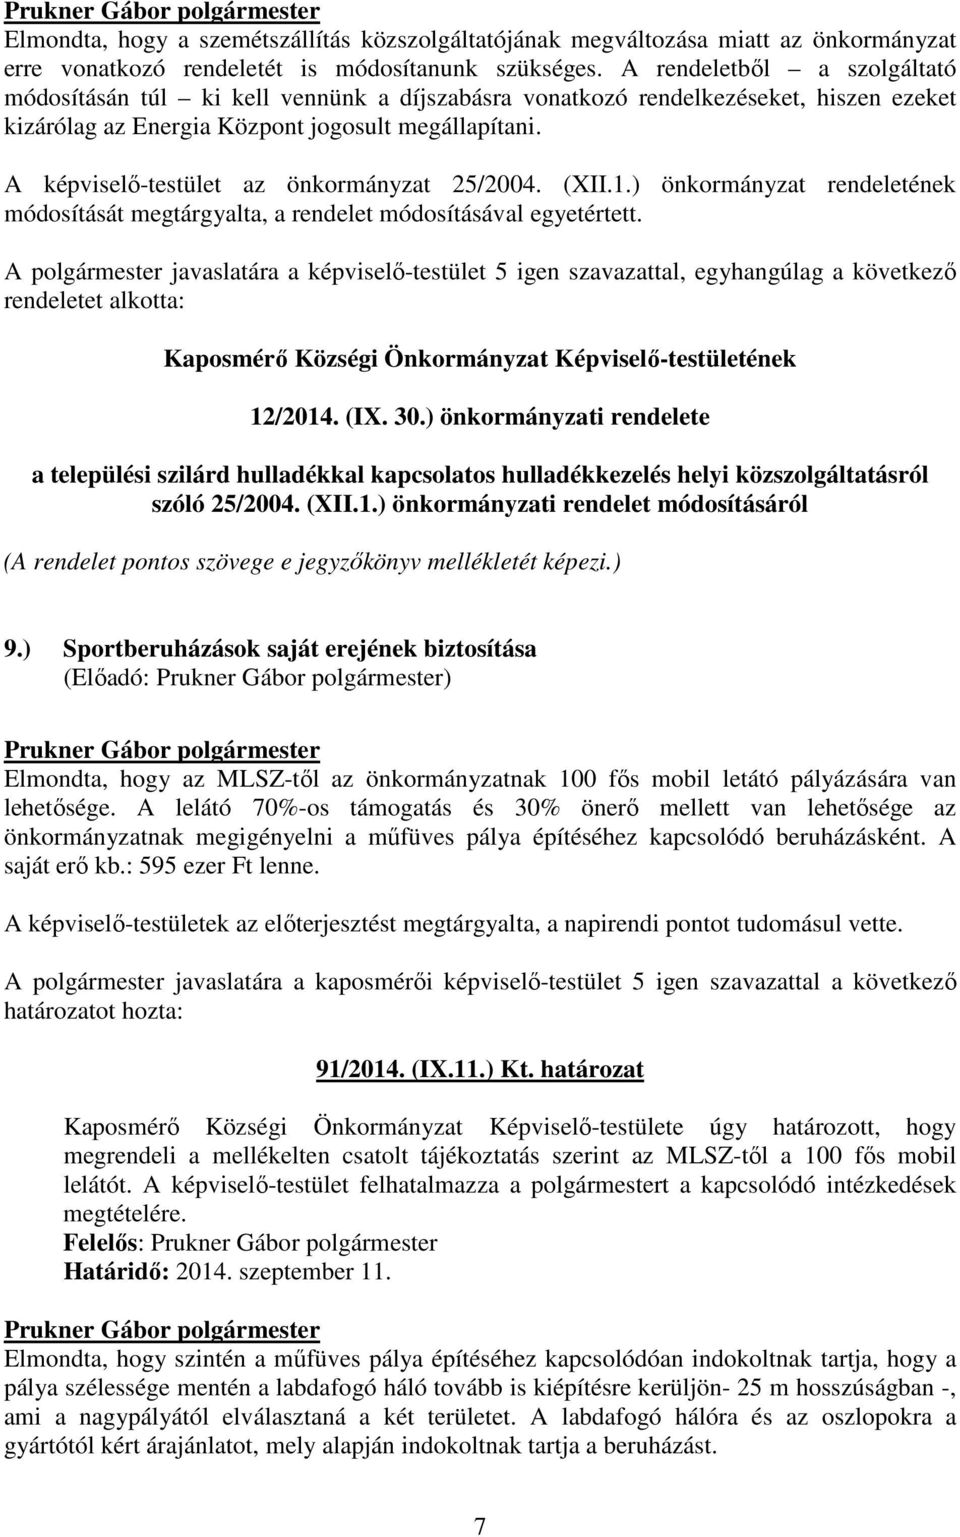 A képviselı-testület az önkormányzat 25/2004. (XII.1.) önkormányzat rendeletének módosítását megtárgyalta, a rendelet módosításával egyetértett.